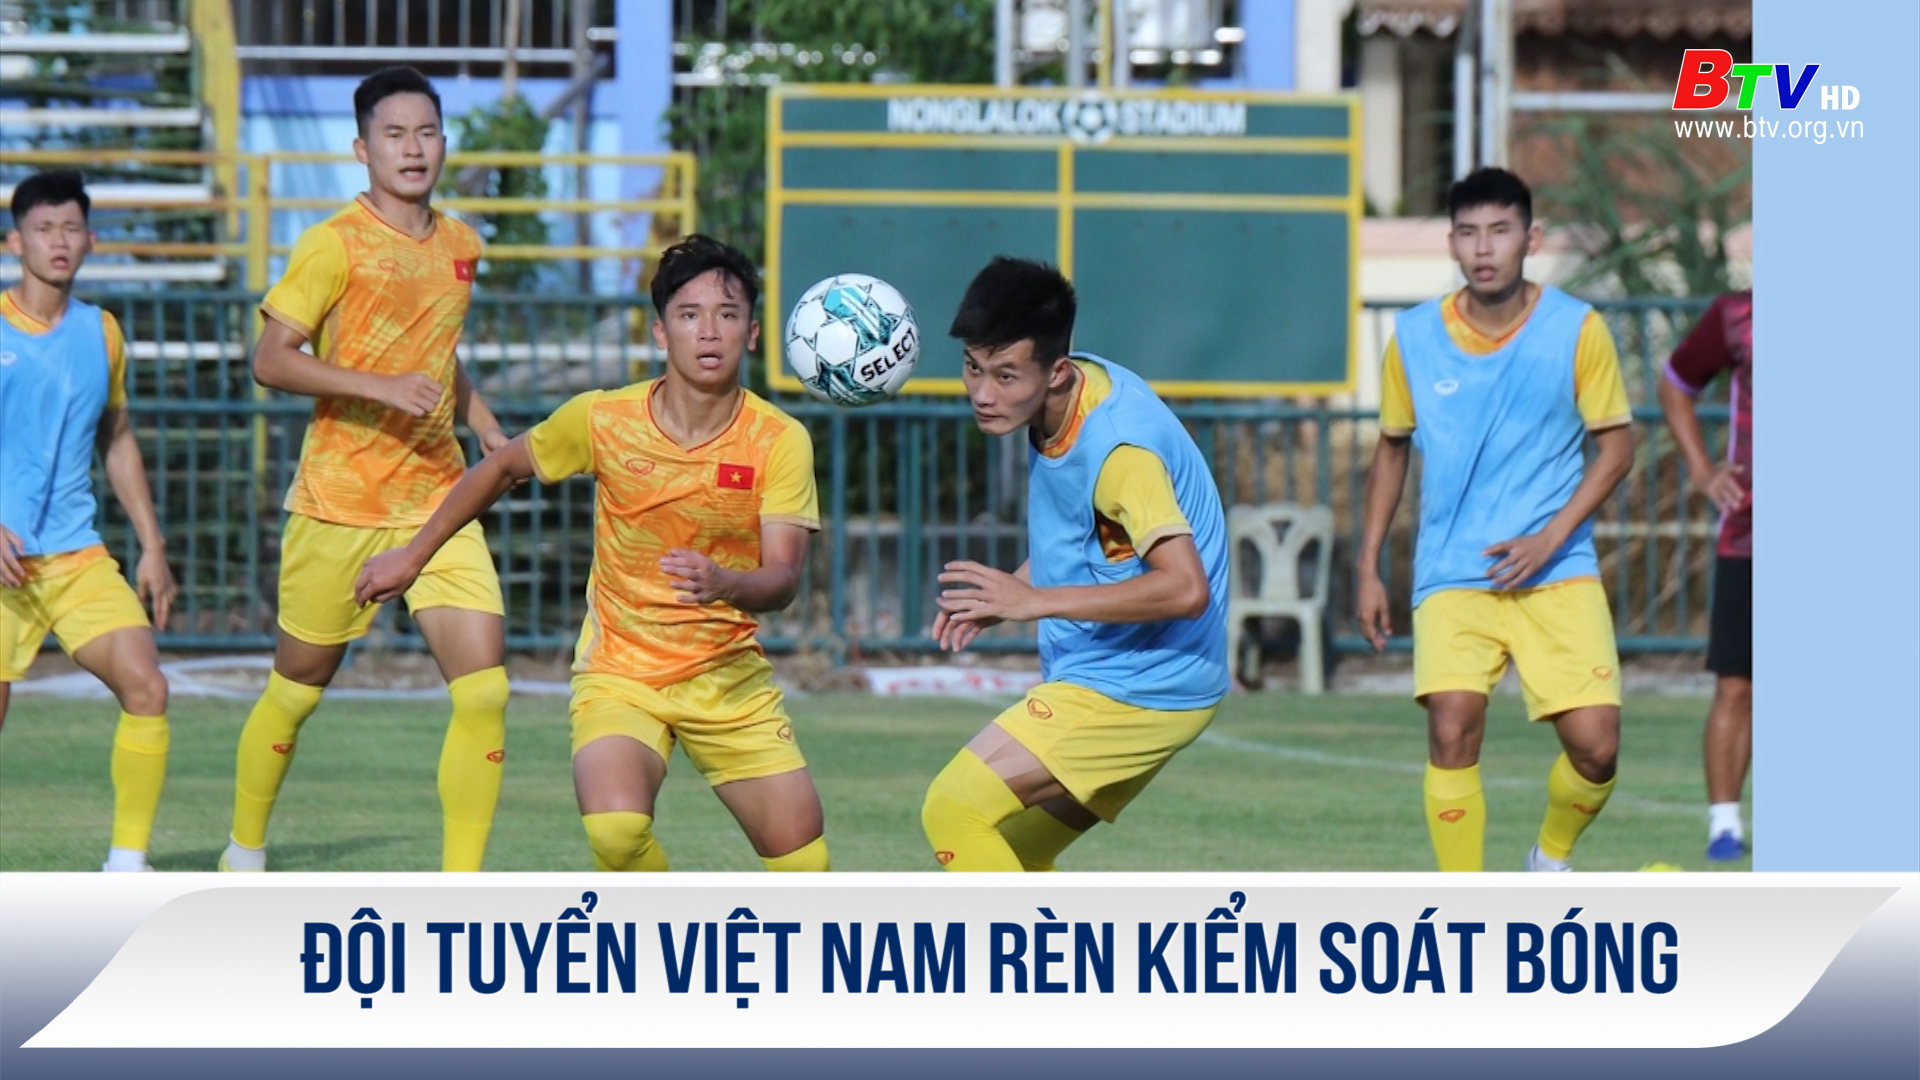 Đội tuyển Việt Nam rèn kiểm soát bóng